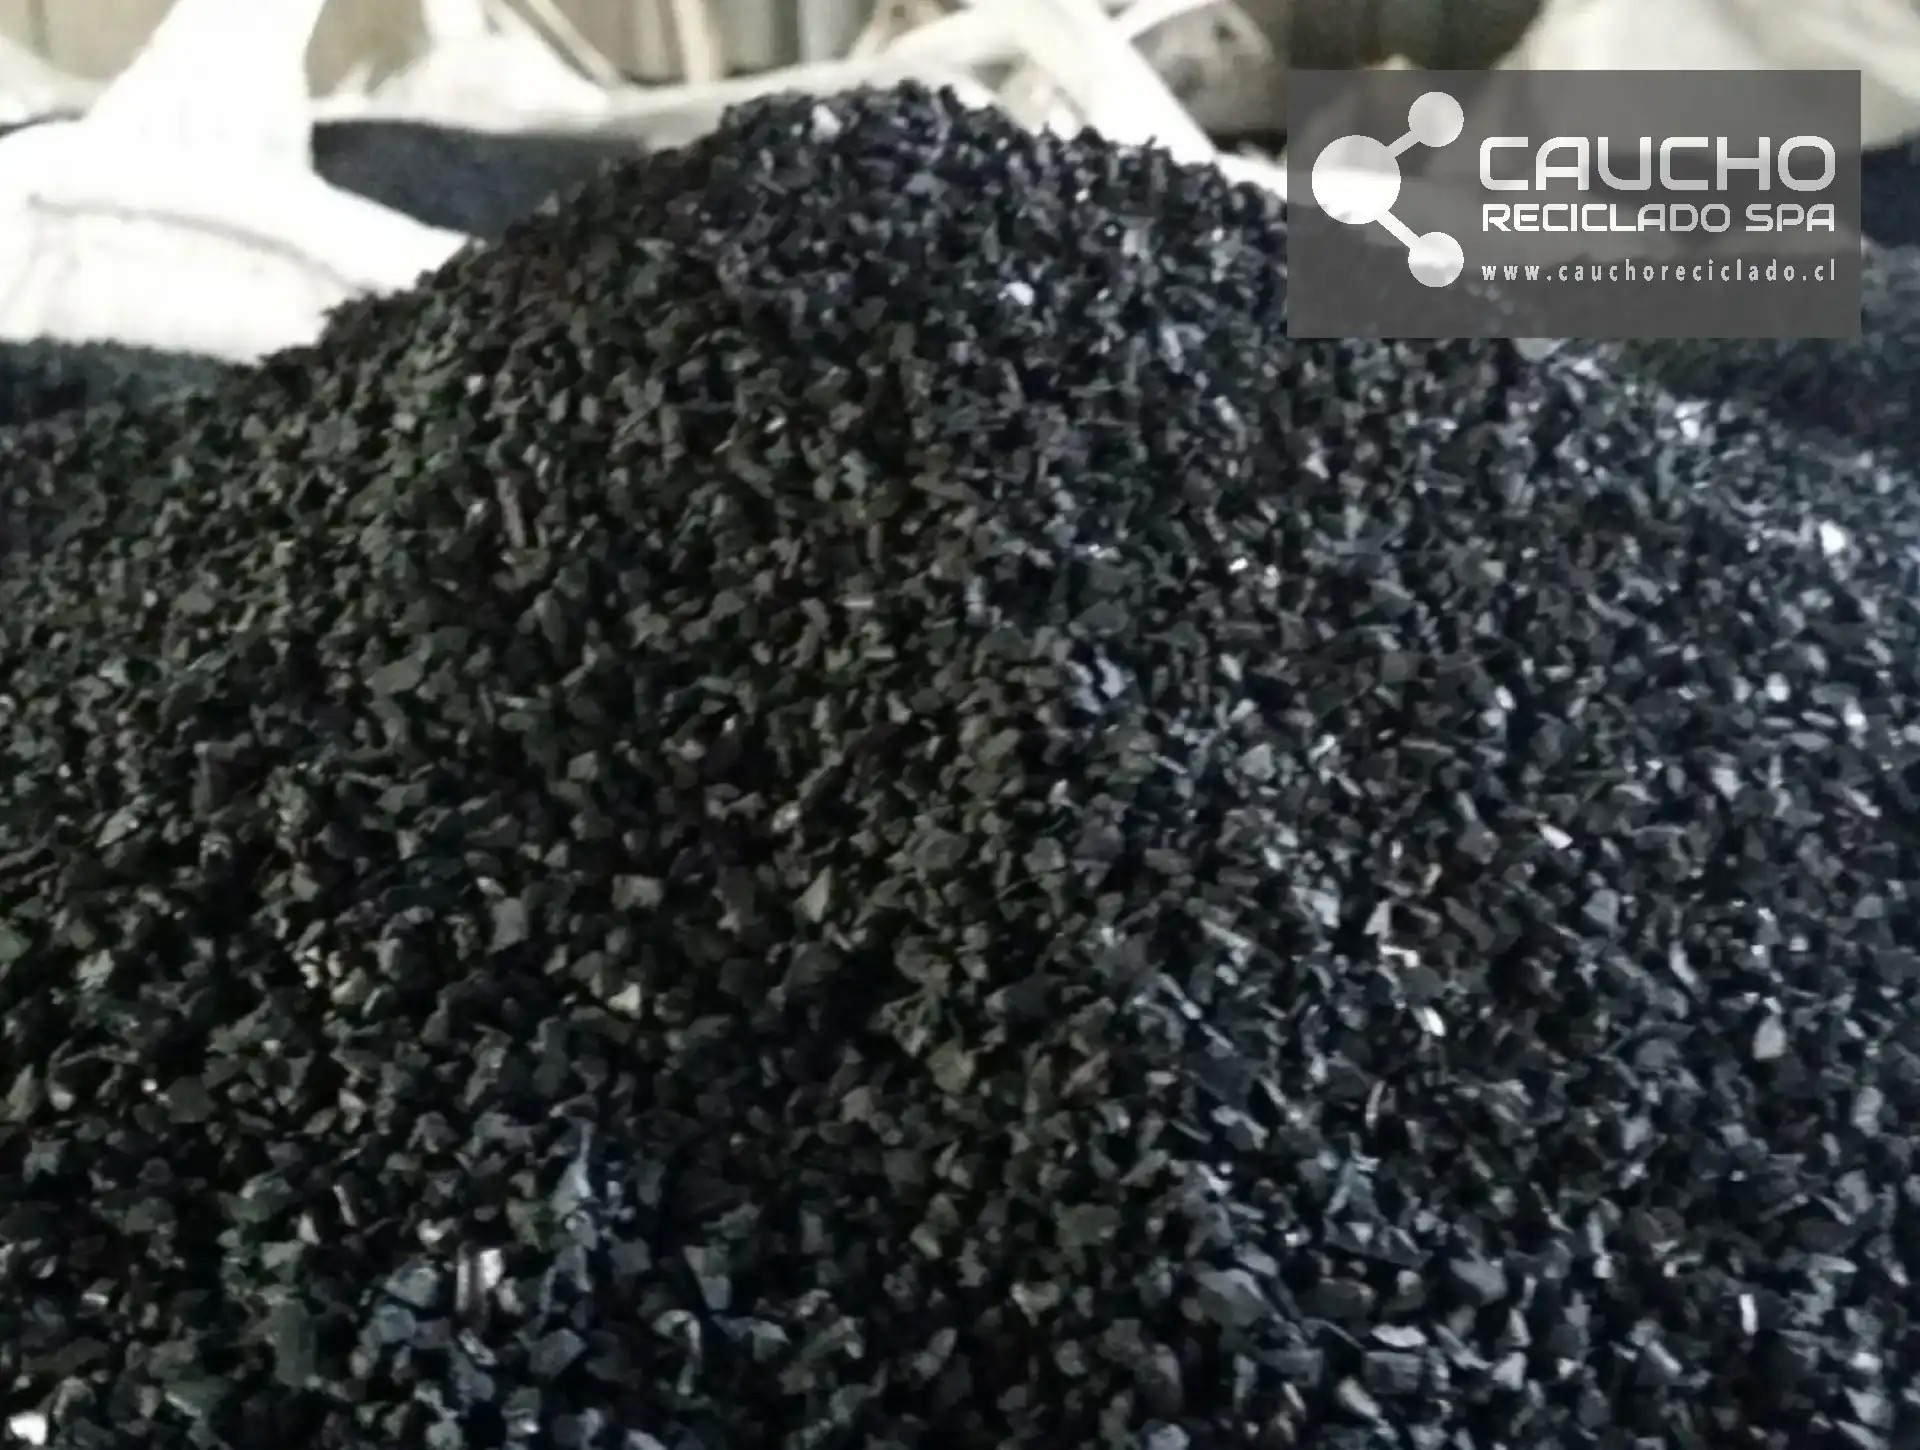 Venta de Caucho en Chile, una Manera de Reciclar Neumáticos